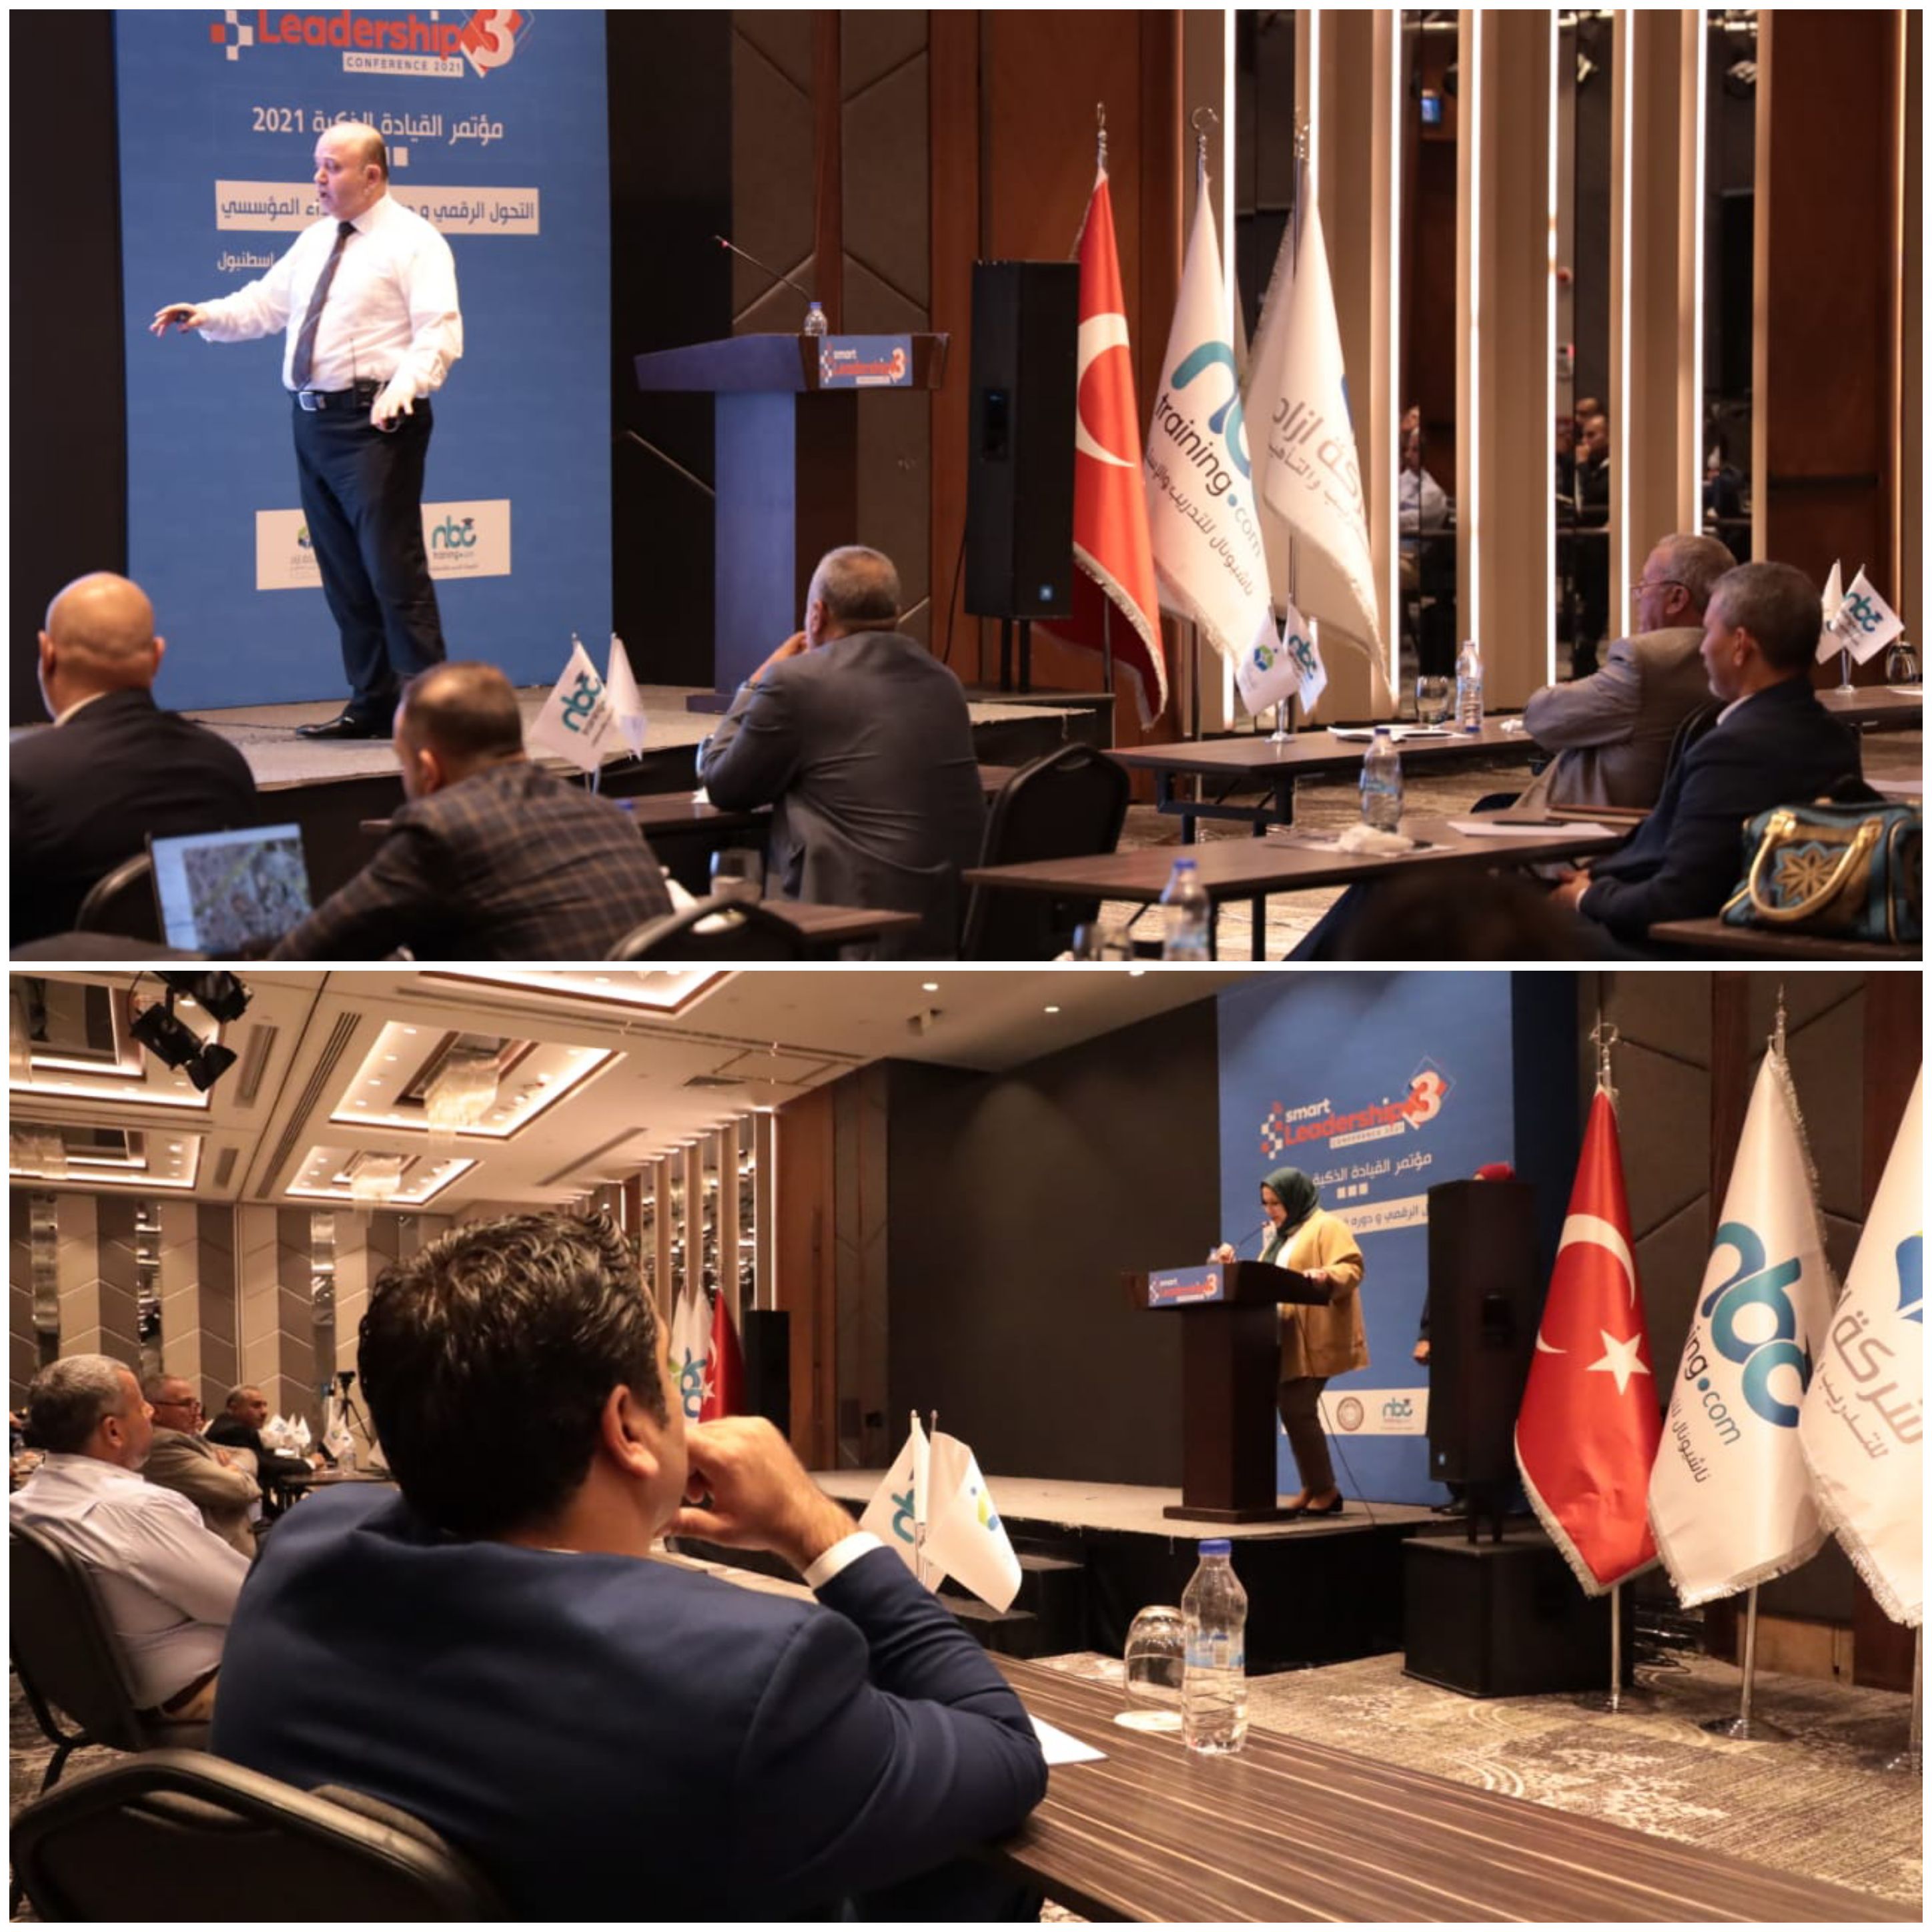 القيادة الذكية 2021م يختتم في اسطنبول بتوصية نمذجة مؤتمر التحول الرقمي في بلدان الشرق الأوسط